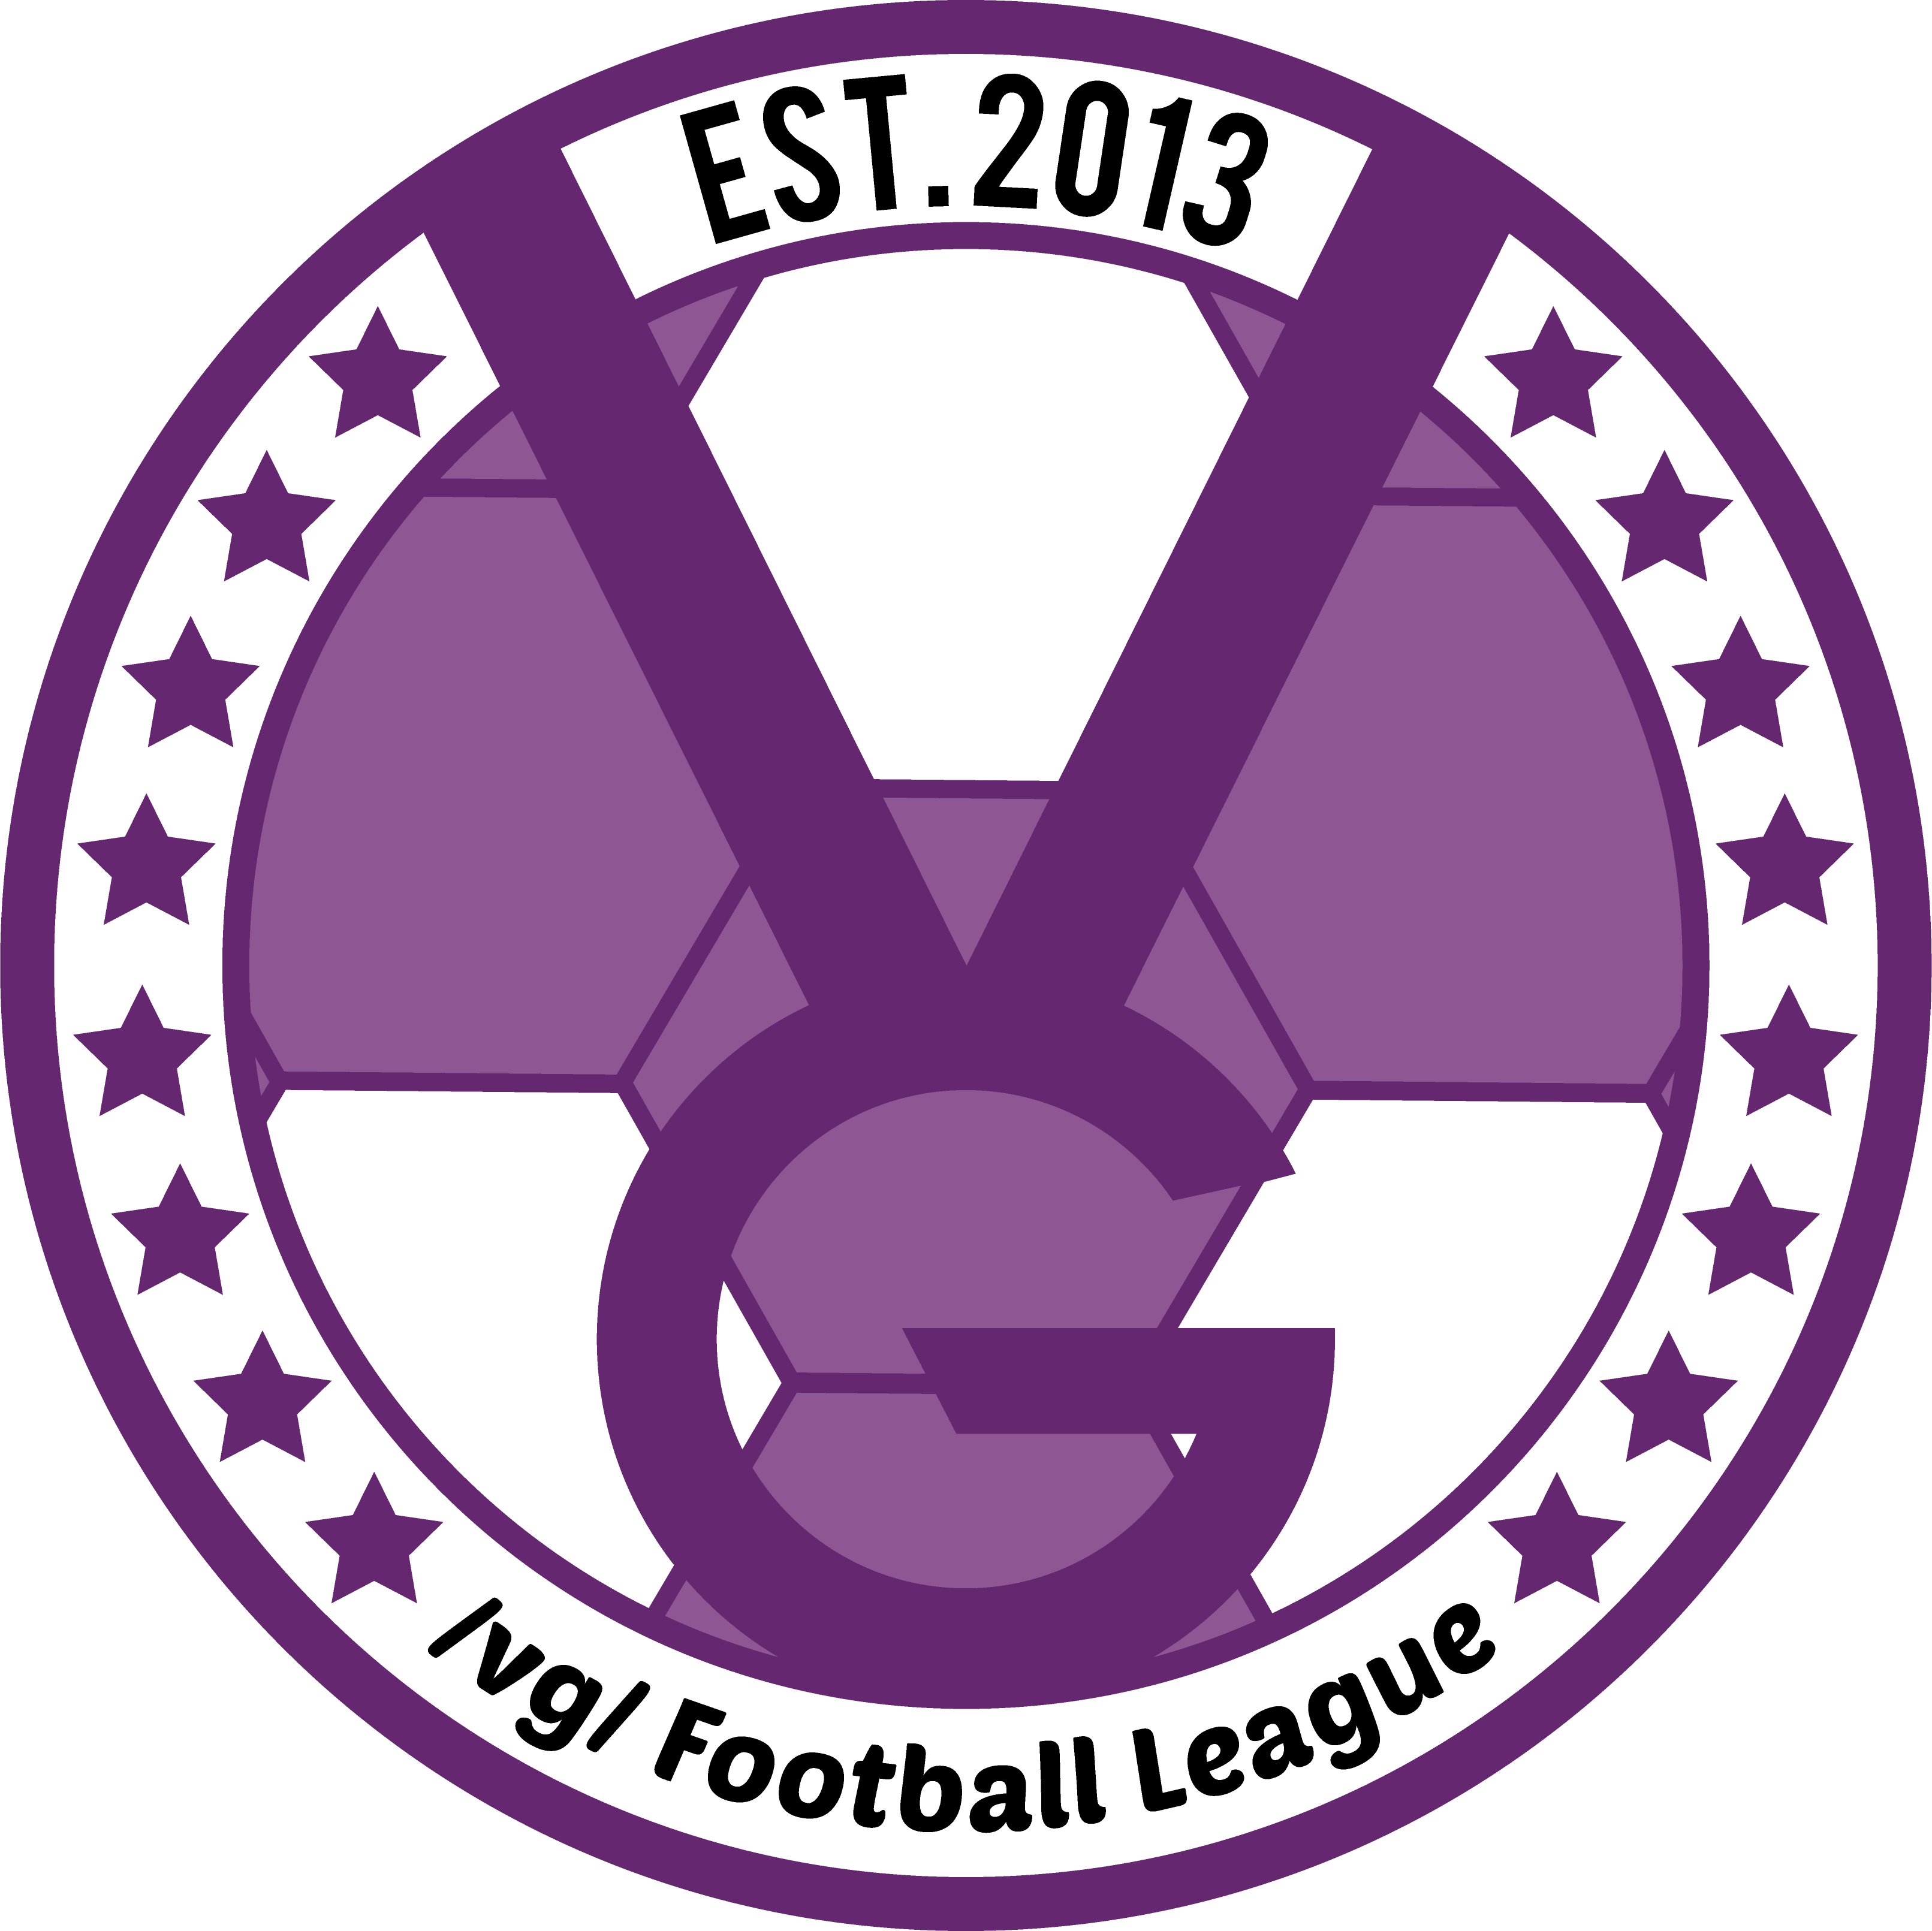 /vg/ League 17